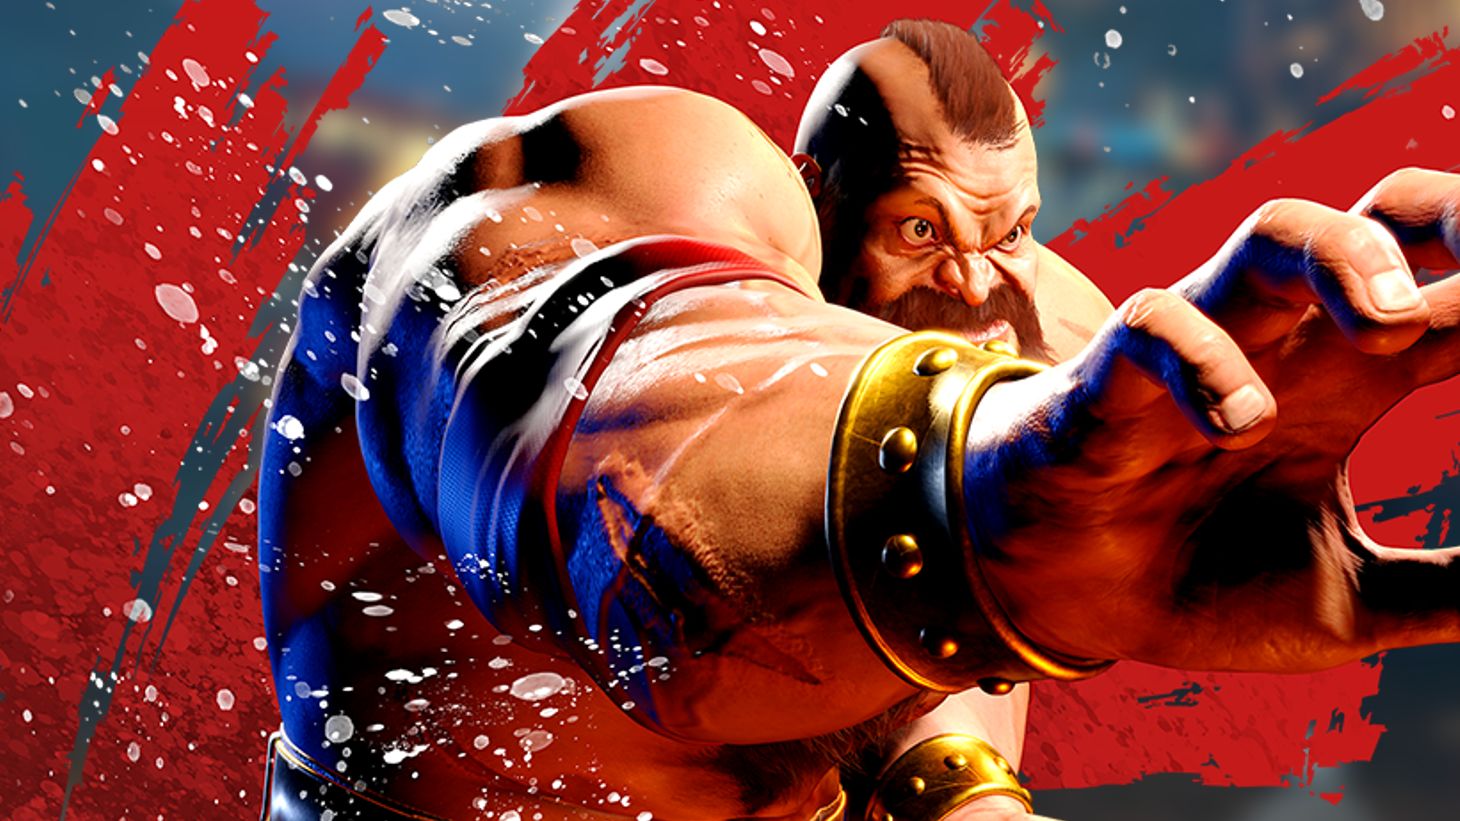 Street Fighter 6: dublador de My Hero Academia e Round 6 será voz de Jamie, esports